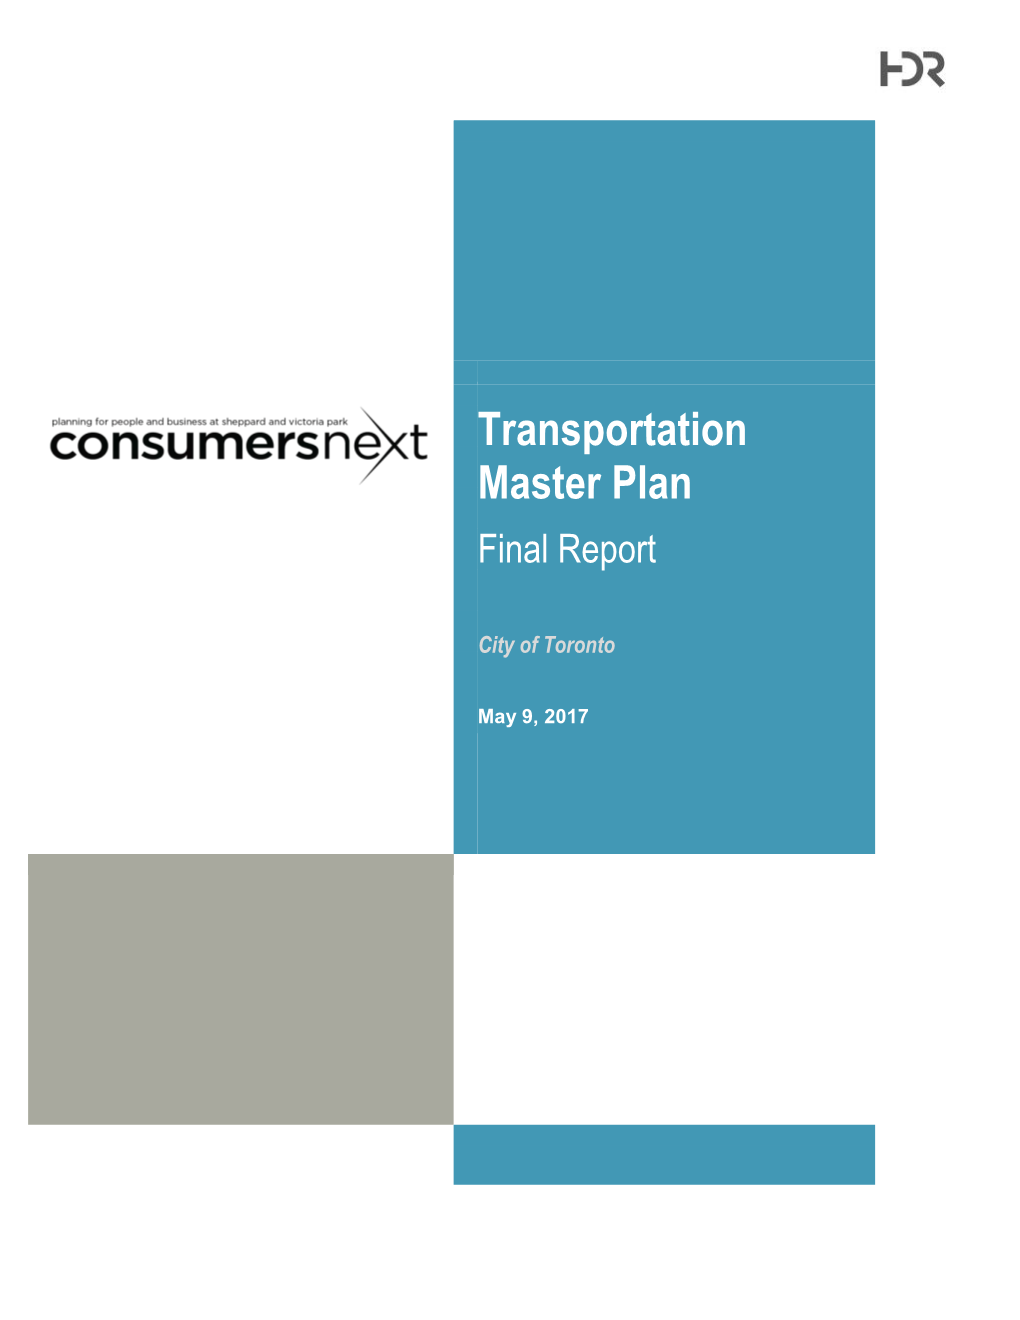 Transportation Master Plan Report